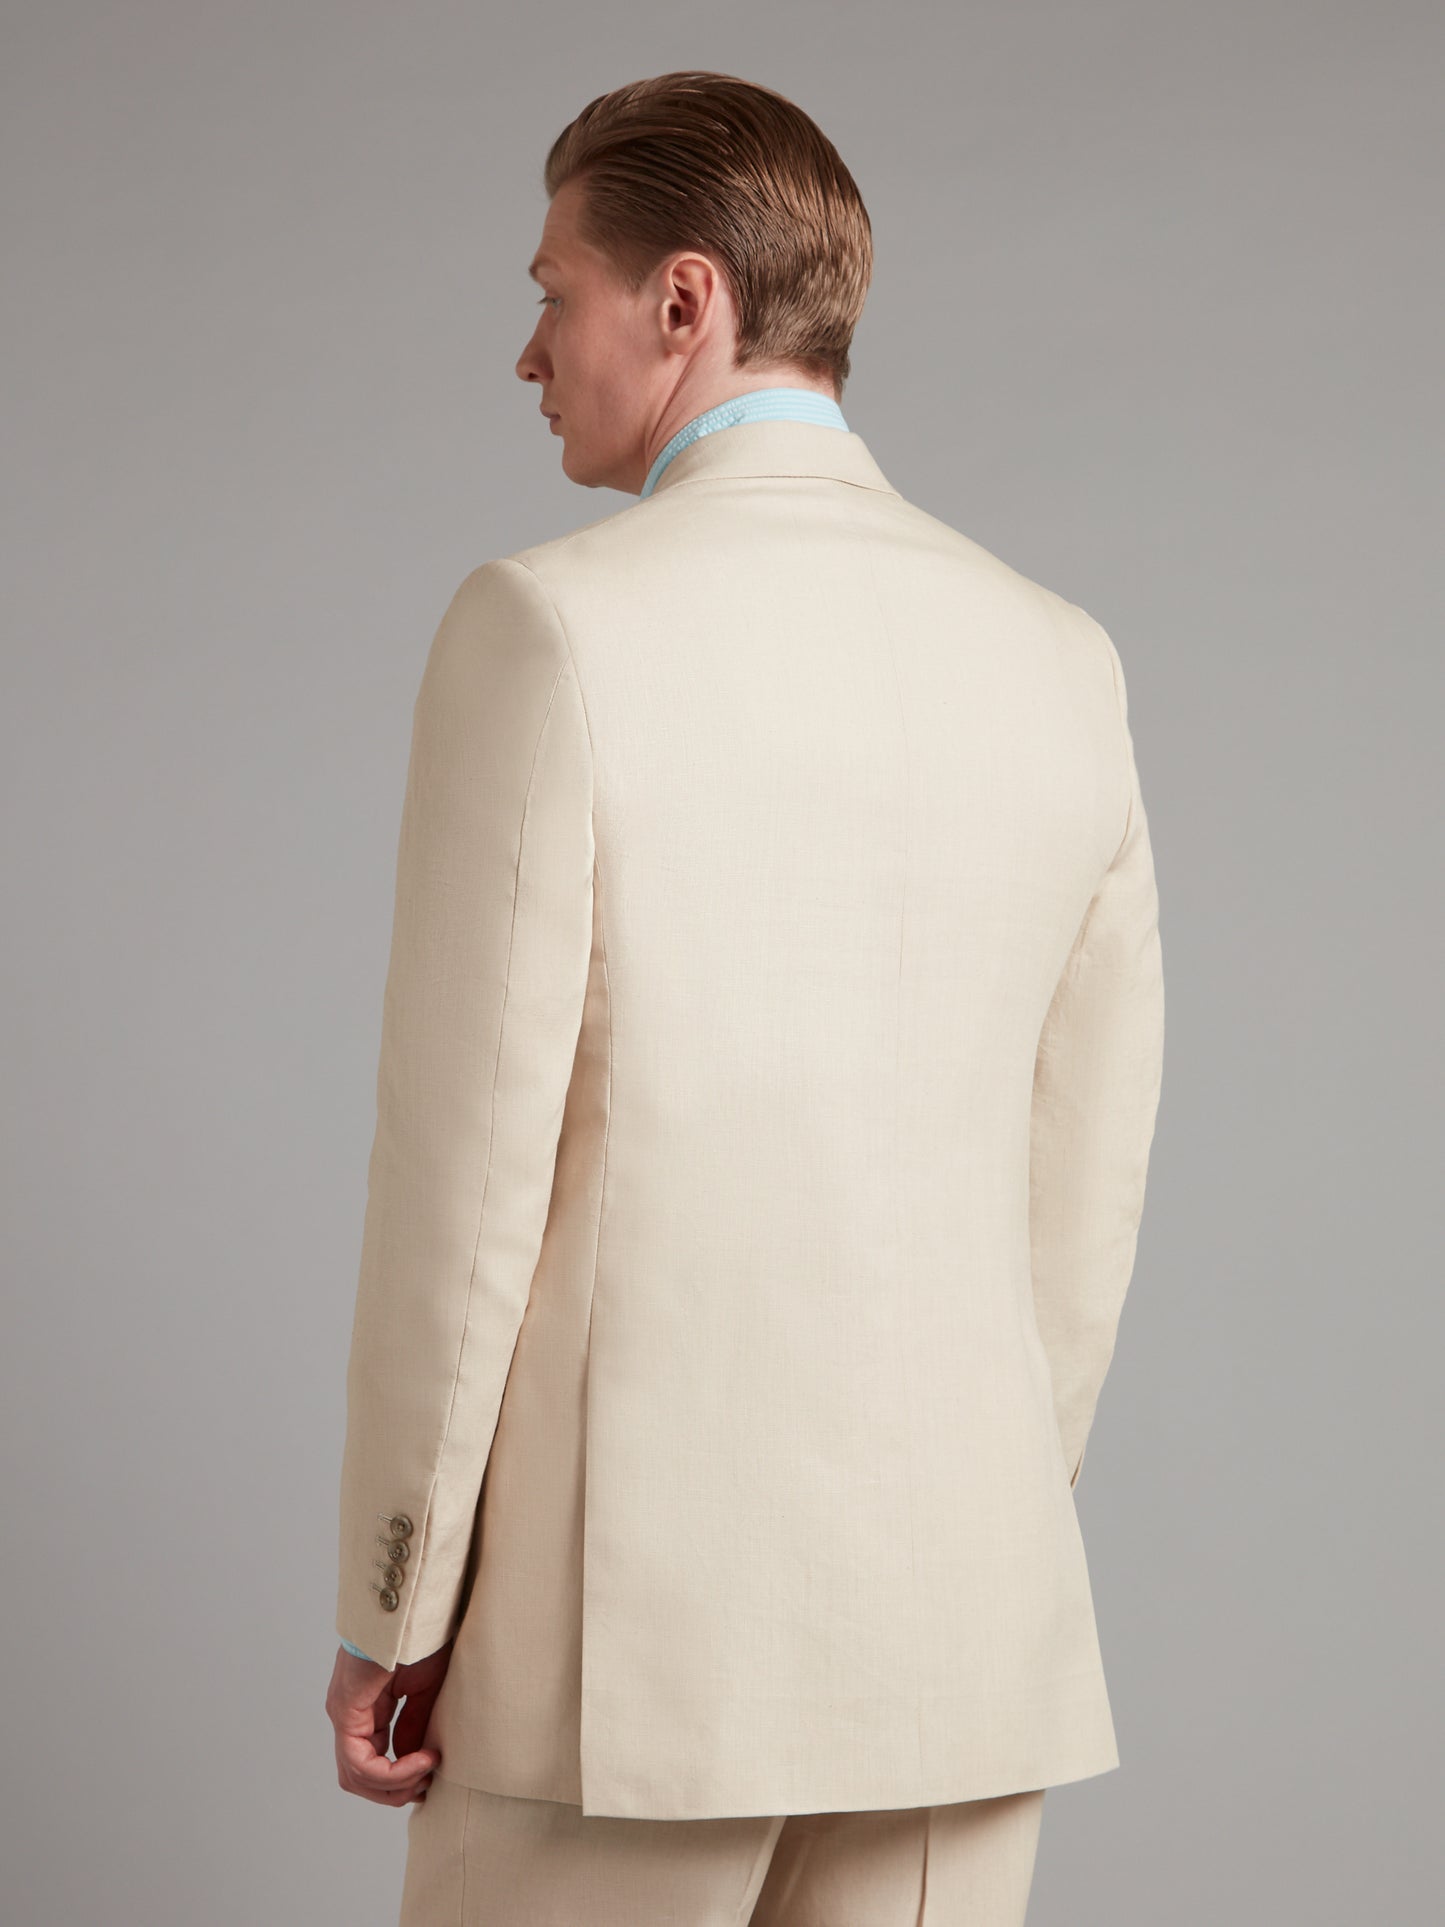 Cadogan Suit Linen - Stone